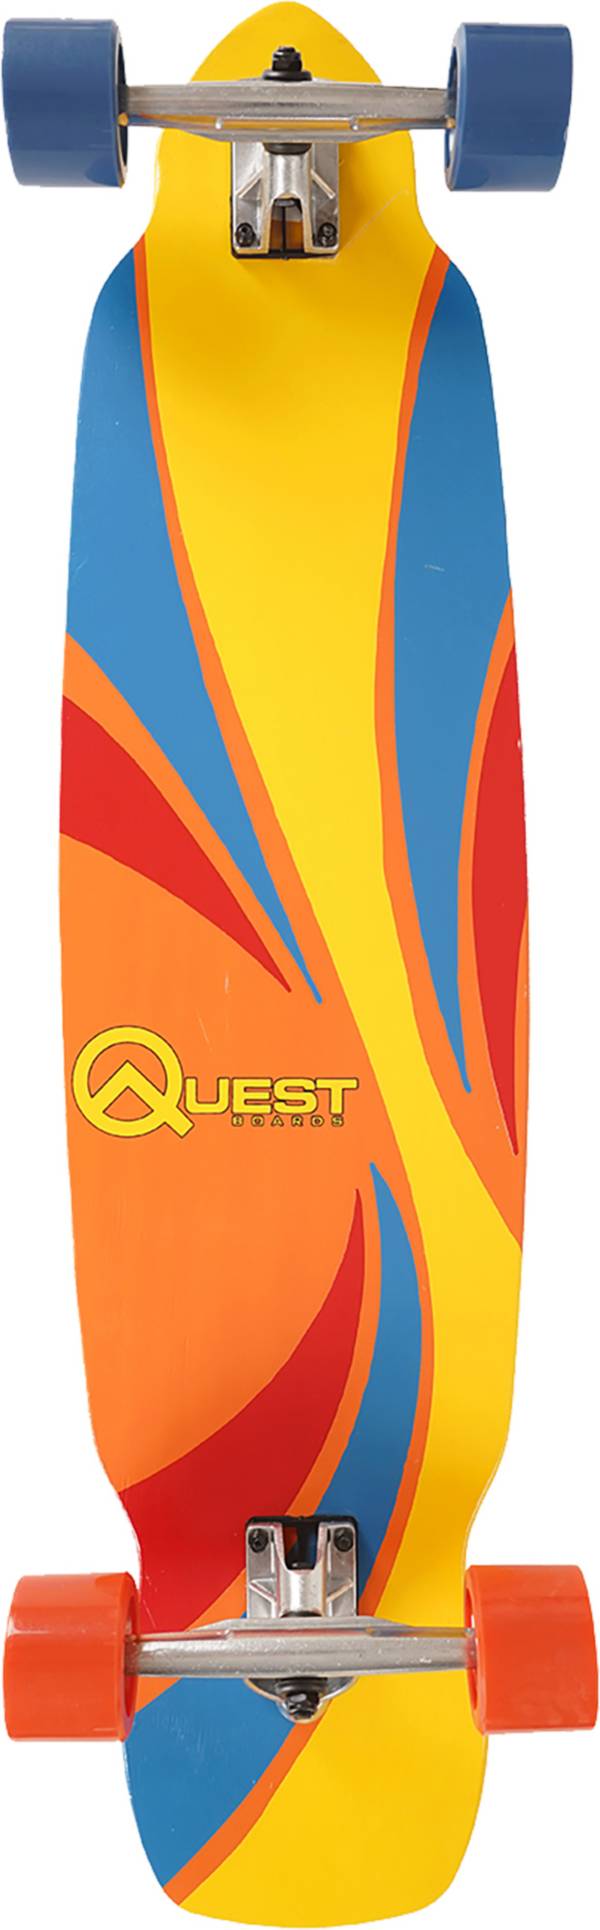 Quest 39” Swirley Carve Longboard